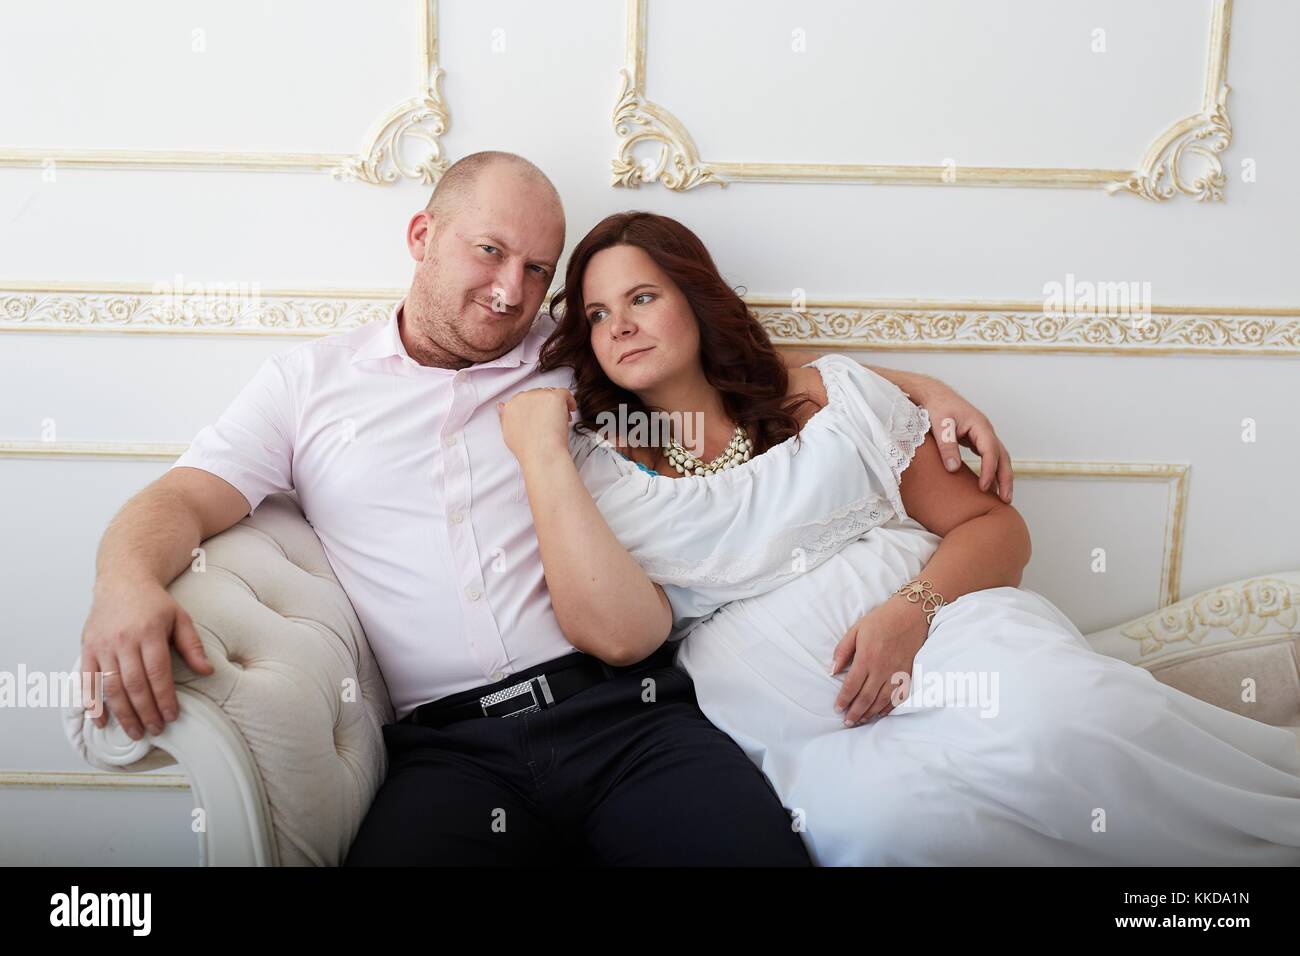 Uomo sorridente abbracciando la donna incinta in abito bianco seduto sul divano bianco. Coppia felice sul lusso decorate sullo sfondo bianco. Foto Stock